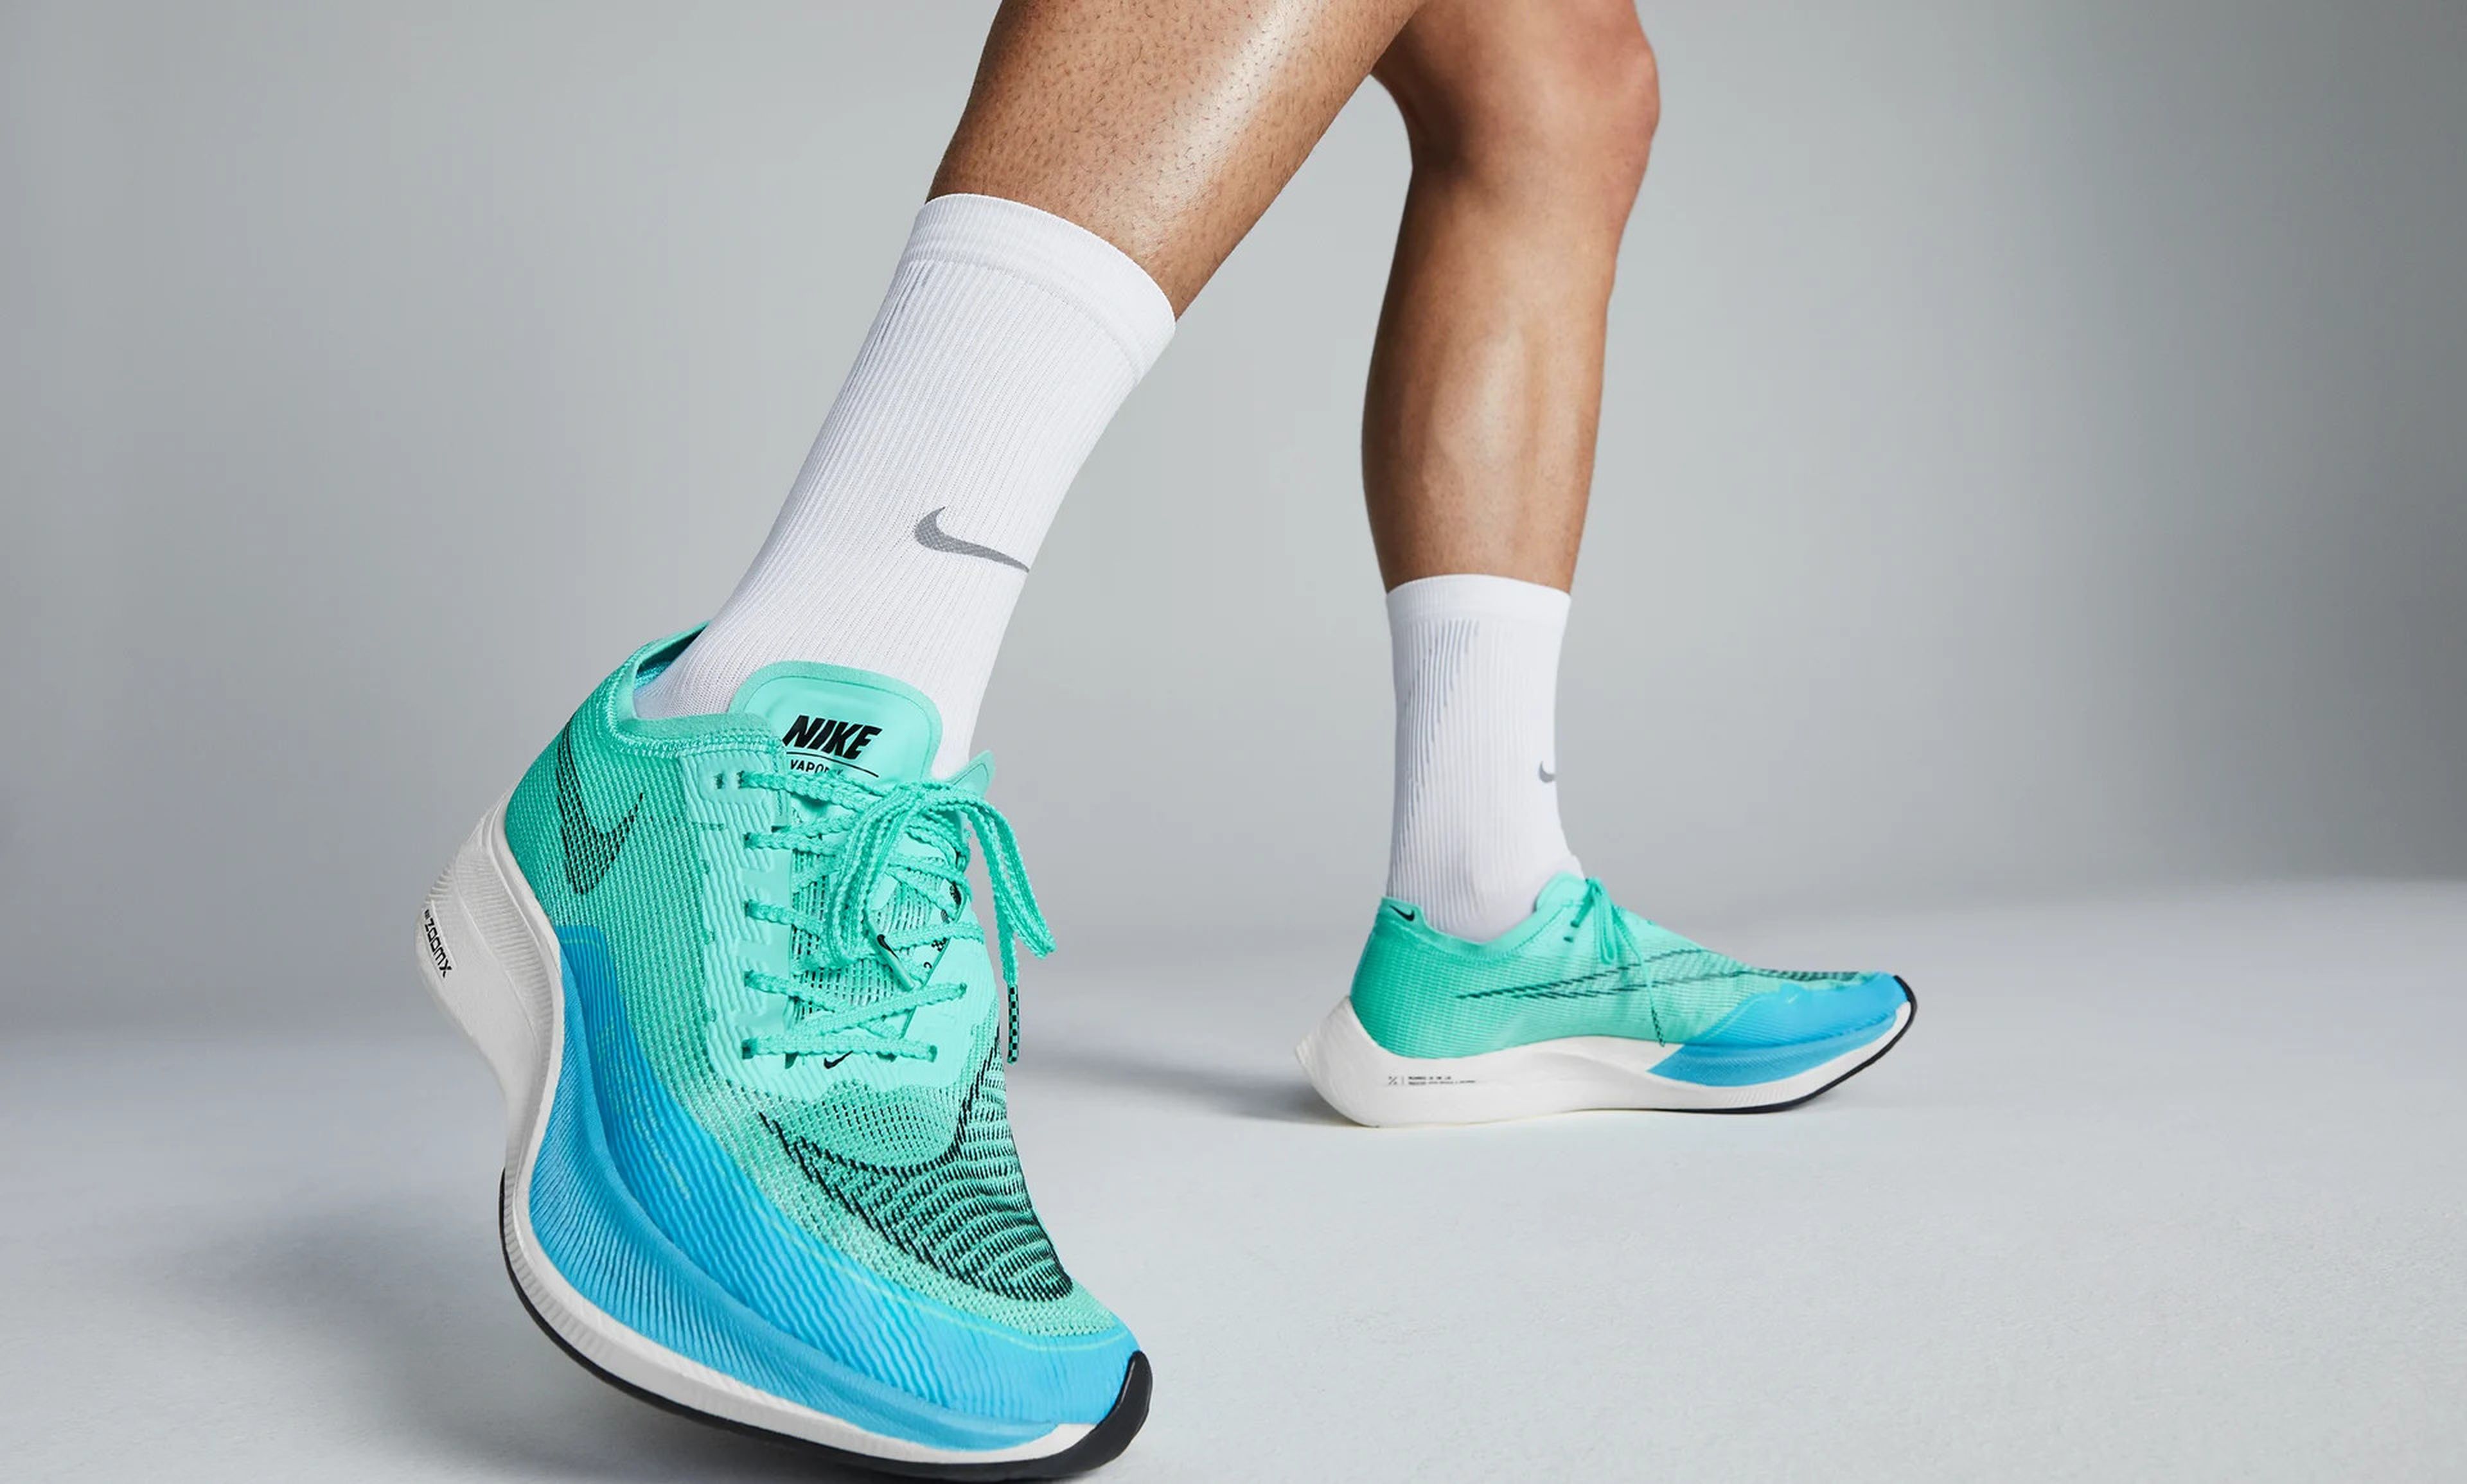 Ambicioso función llegar Estas zapatillas Nike destrozan récords en los JJOO, y las quieren prohibir  | Business Insider España